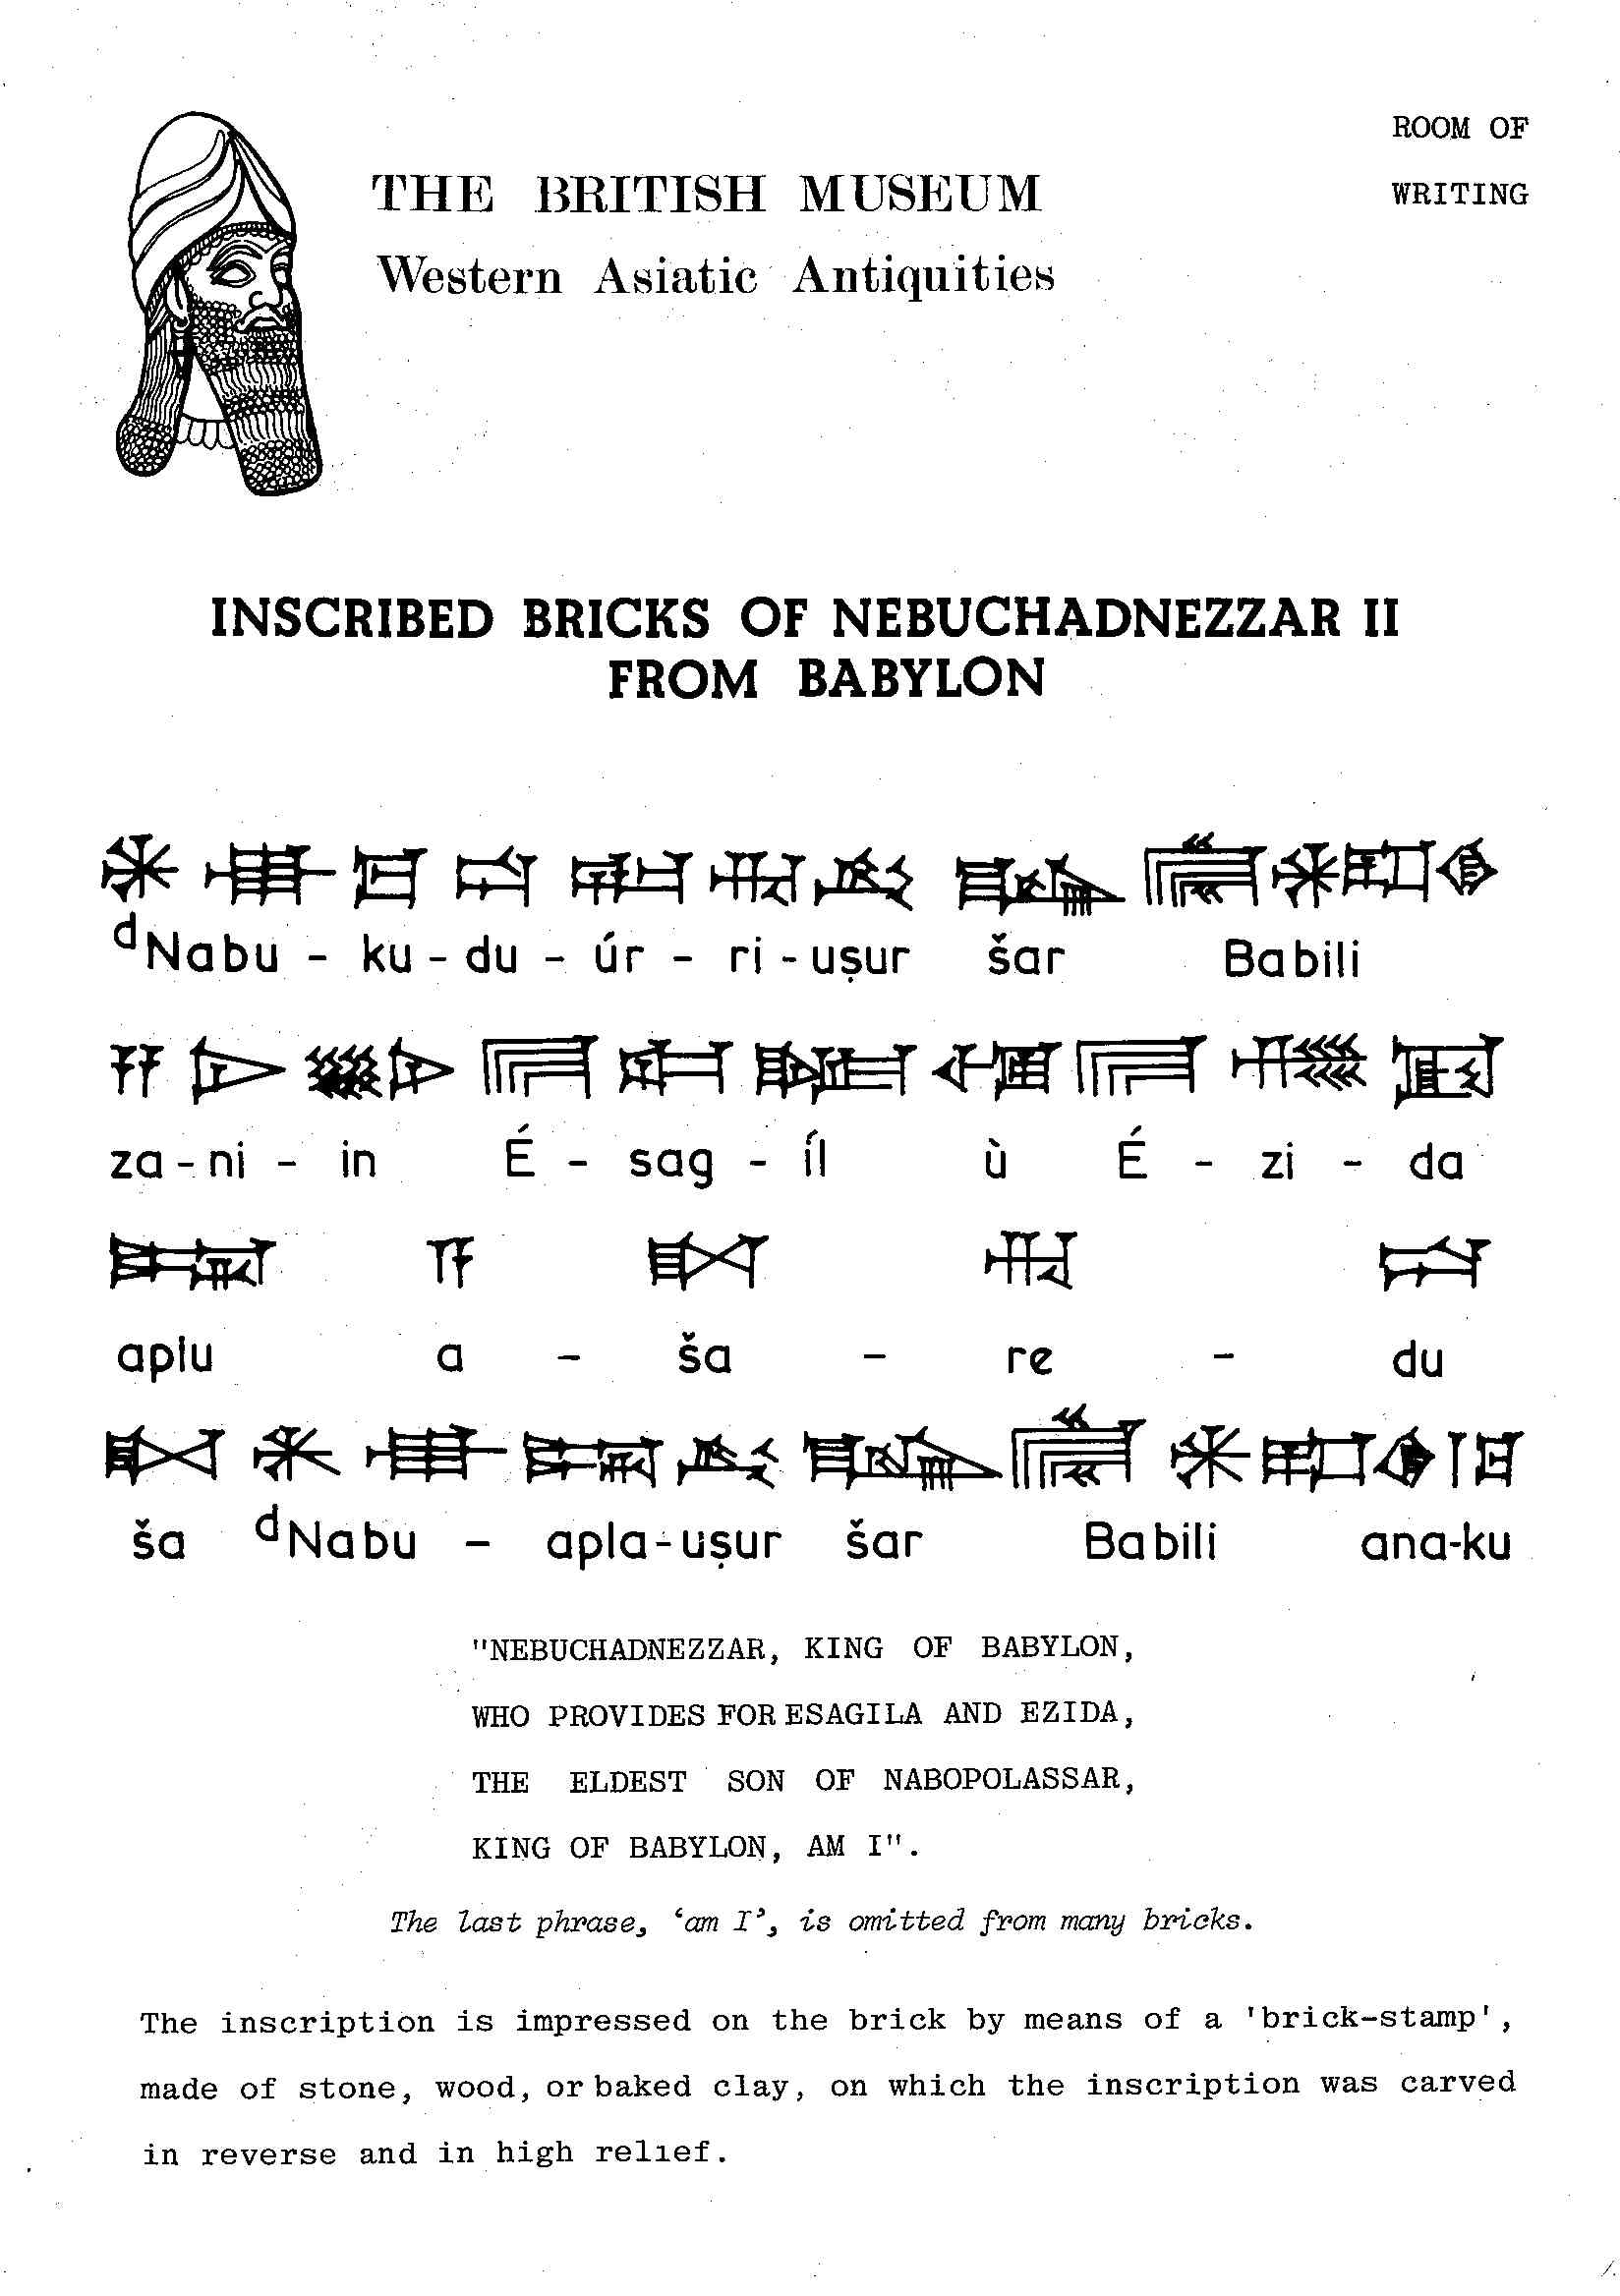 Nebuchadnezzar Brick from Babylon.jpg